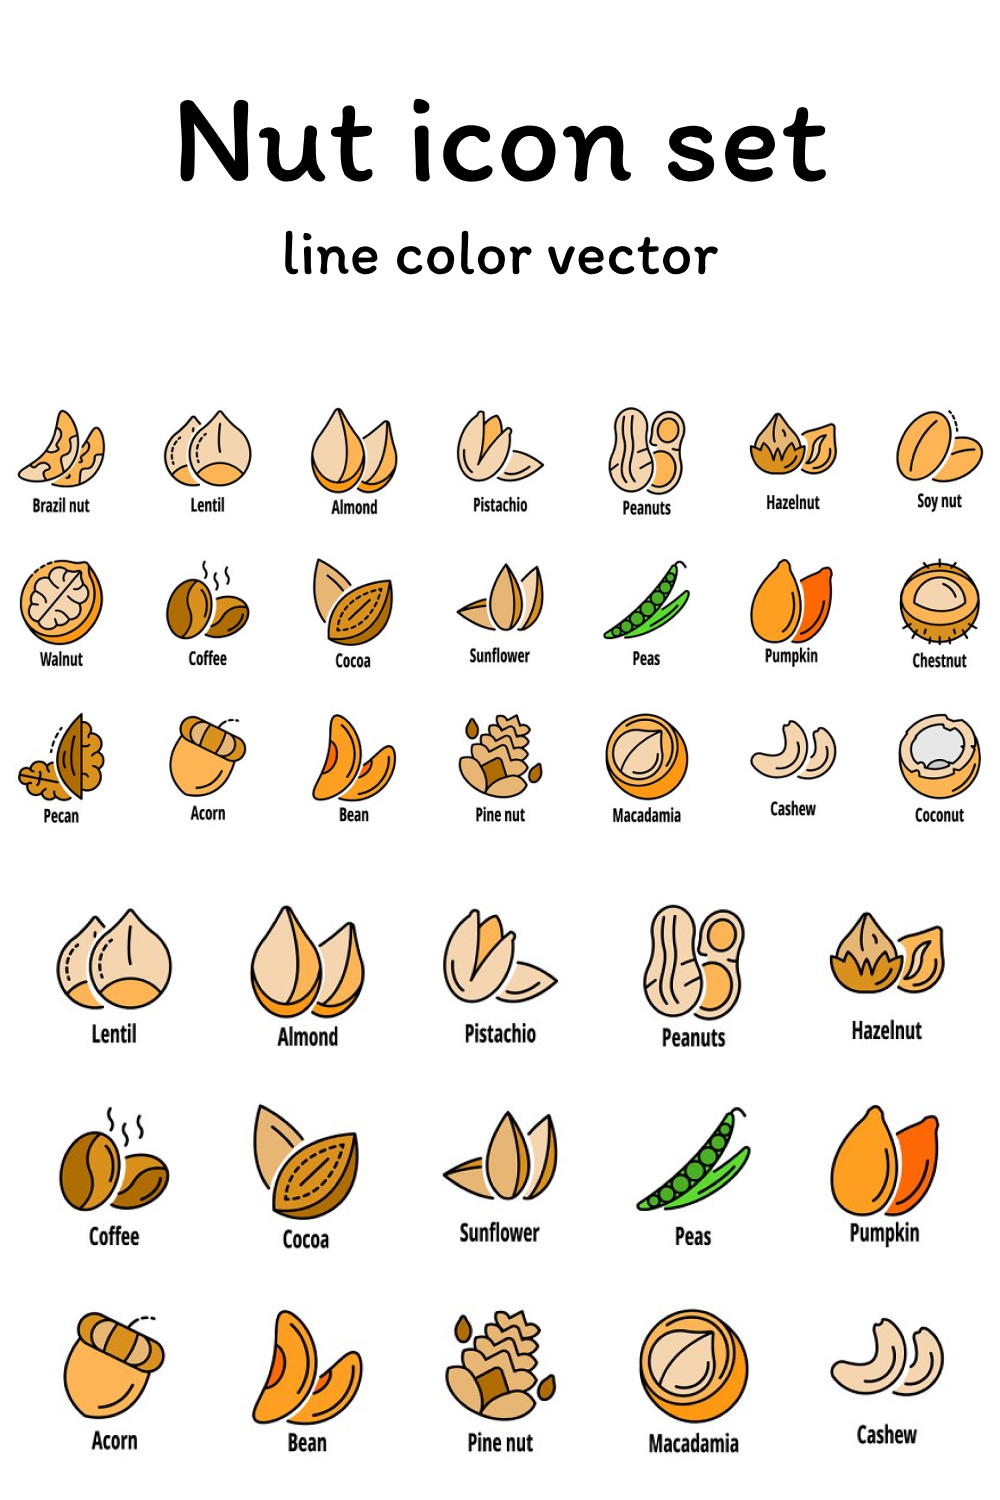 03 nut icon set line color vector 1000x1500 707